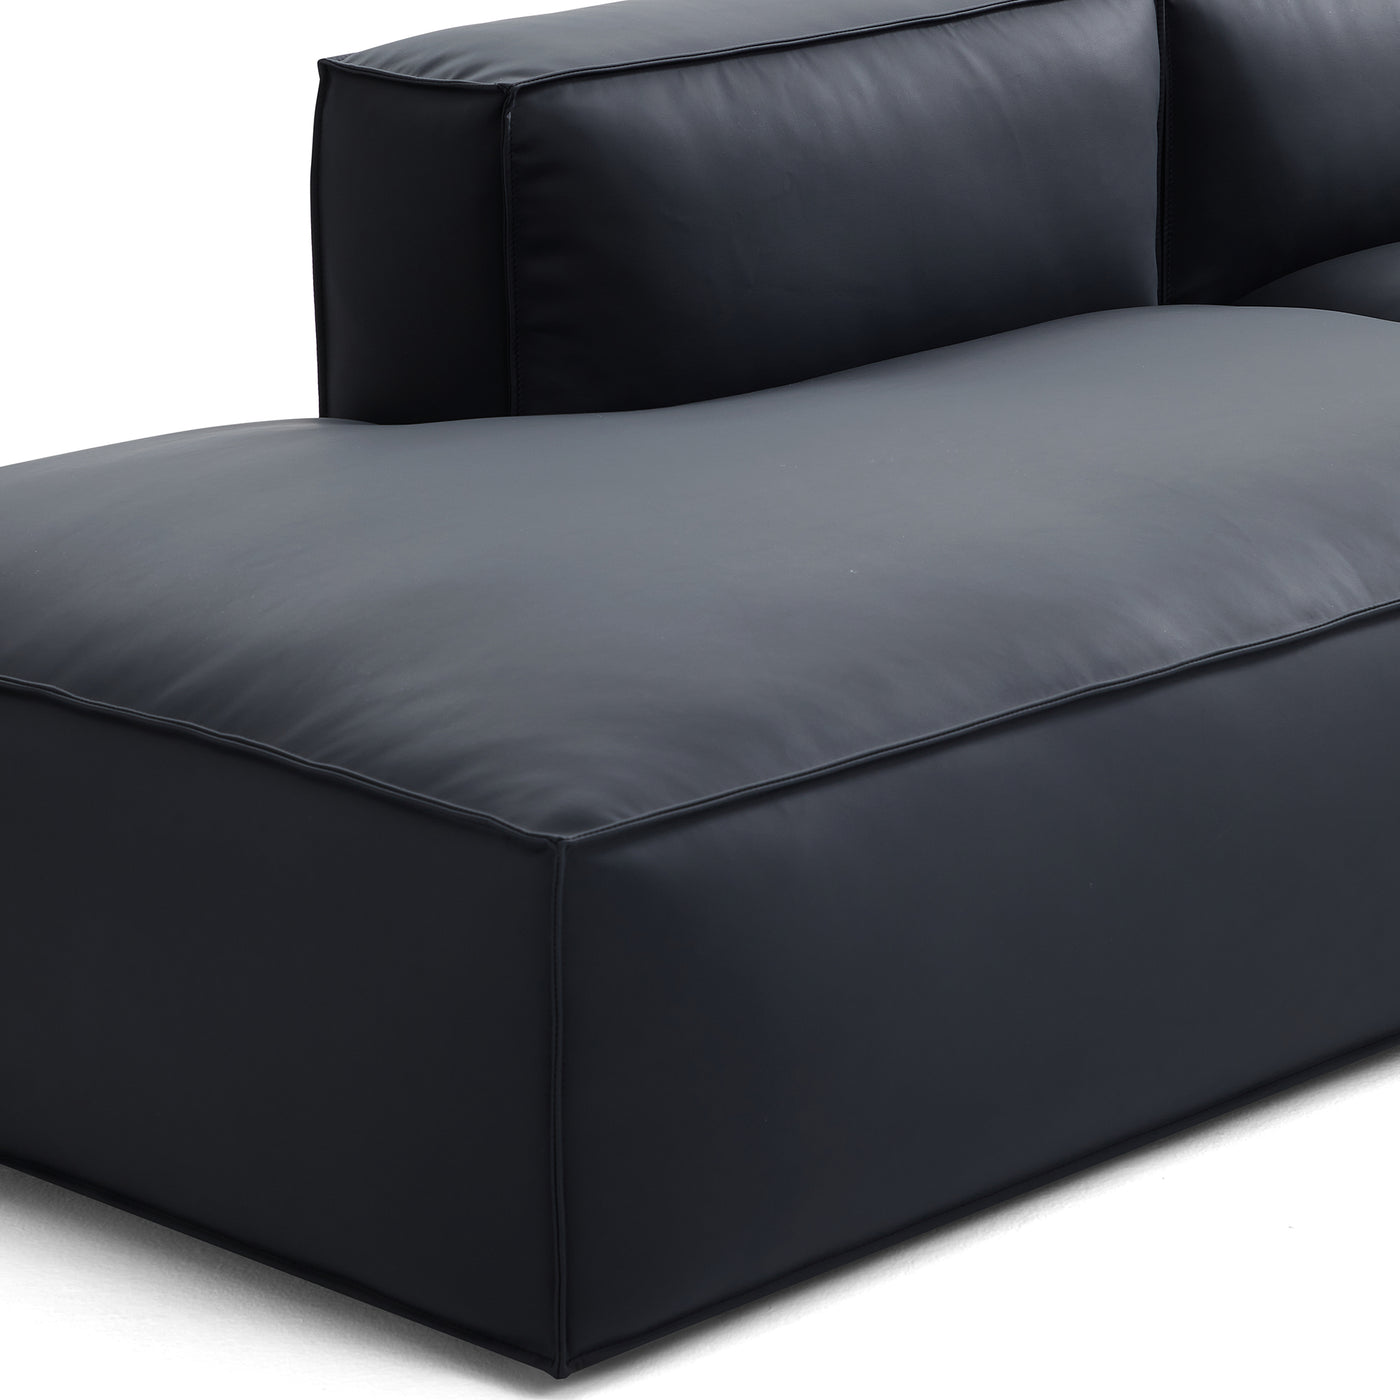 Geometry Minimalist Black Leather Sofa-Black